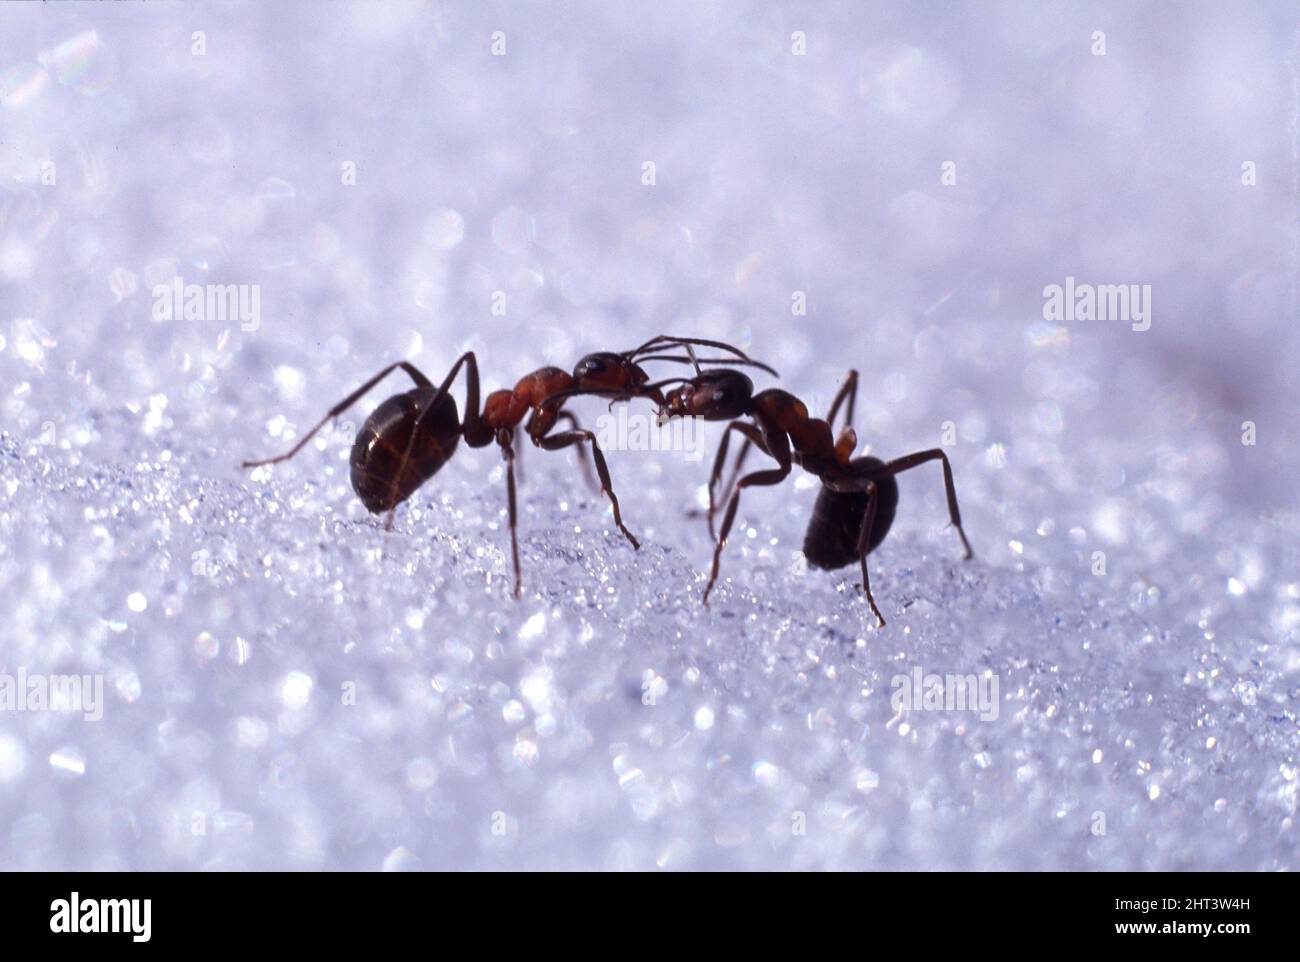 Myror på snö Stock Photo